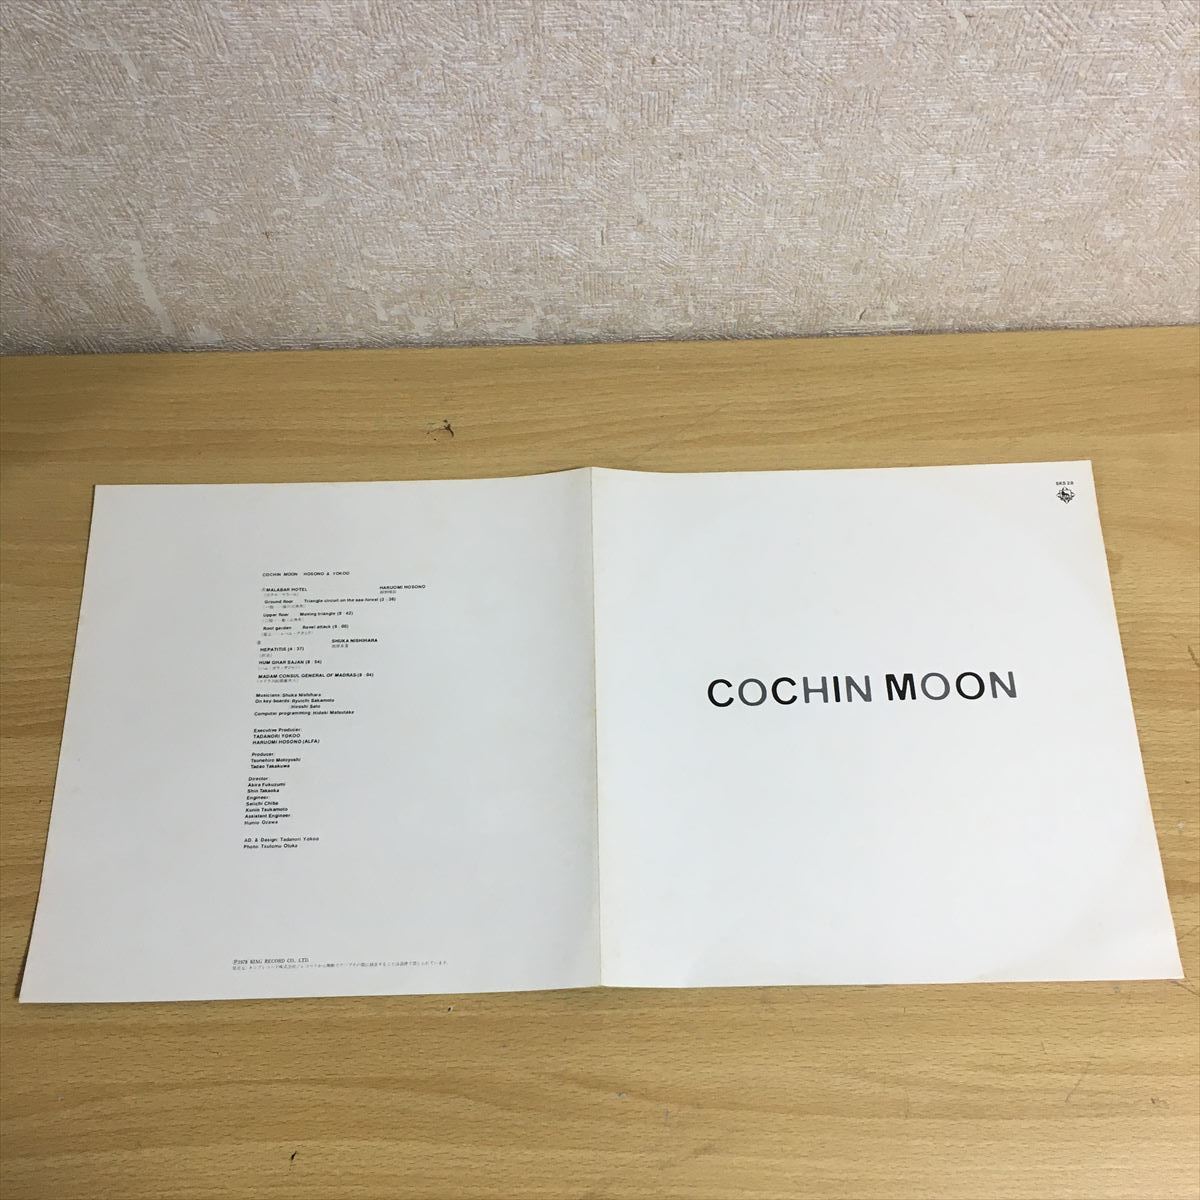 横尾忠則 細野晴臣 「Cochin Moon」 「コチンの月」 King Records SKS-28 12インチ LP LP盤 レコード レコード盤 アナログ盤 1 カ 6655_画像3